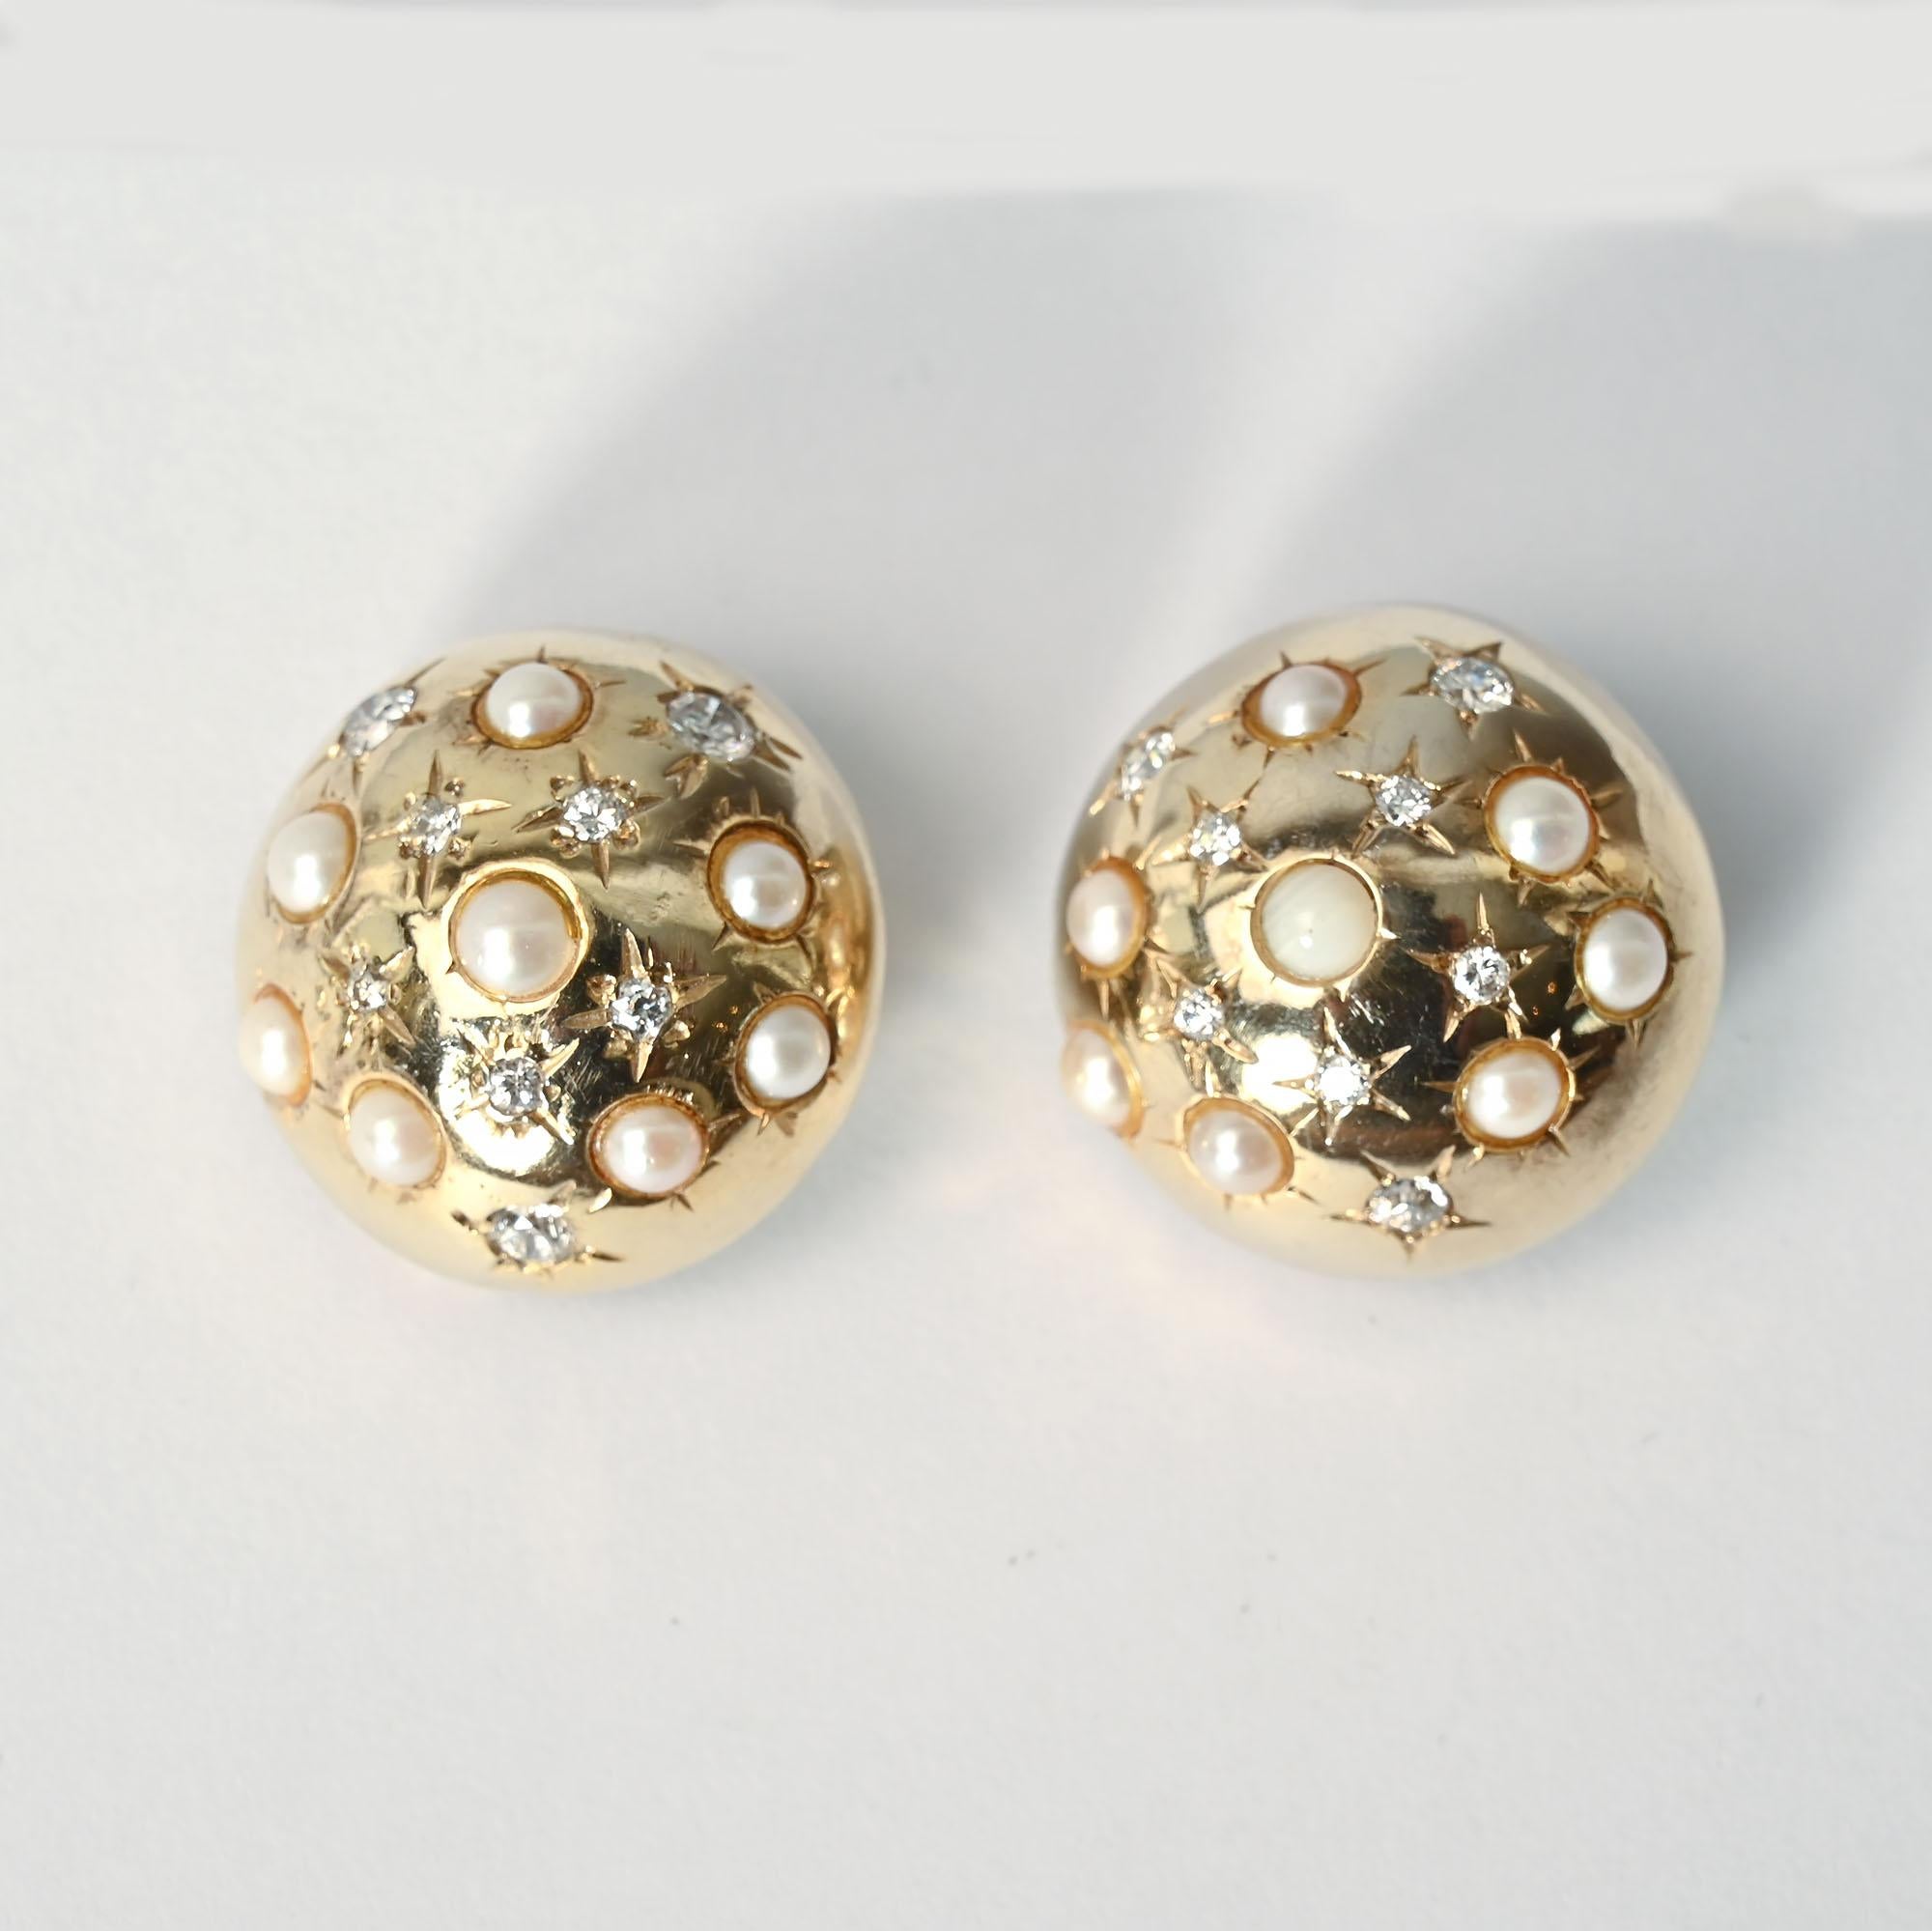 Die runden Ohrringe aus 14 Karat Gold sind mit Perlen und Diamanten besetzt. Die Diamanten sind in einem fünfzackigen Stern gefasst, der in den 1940er Jahren sehr beliebt war.
Die Ohrringe sind 15/16